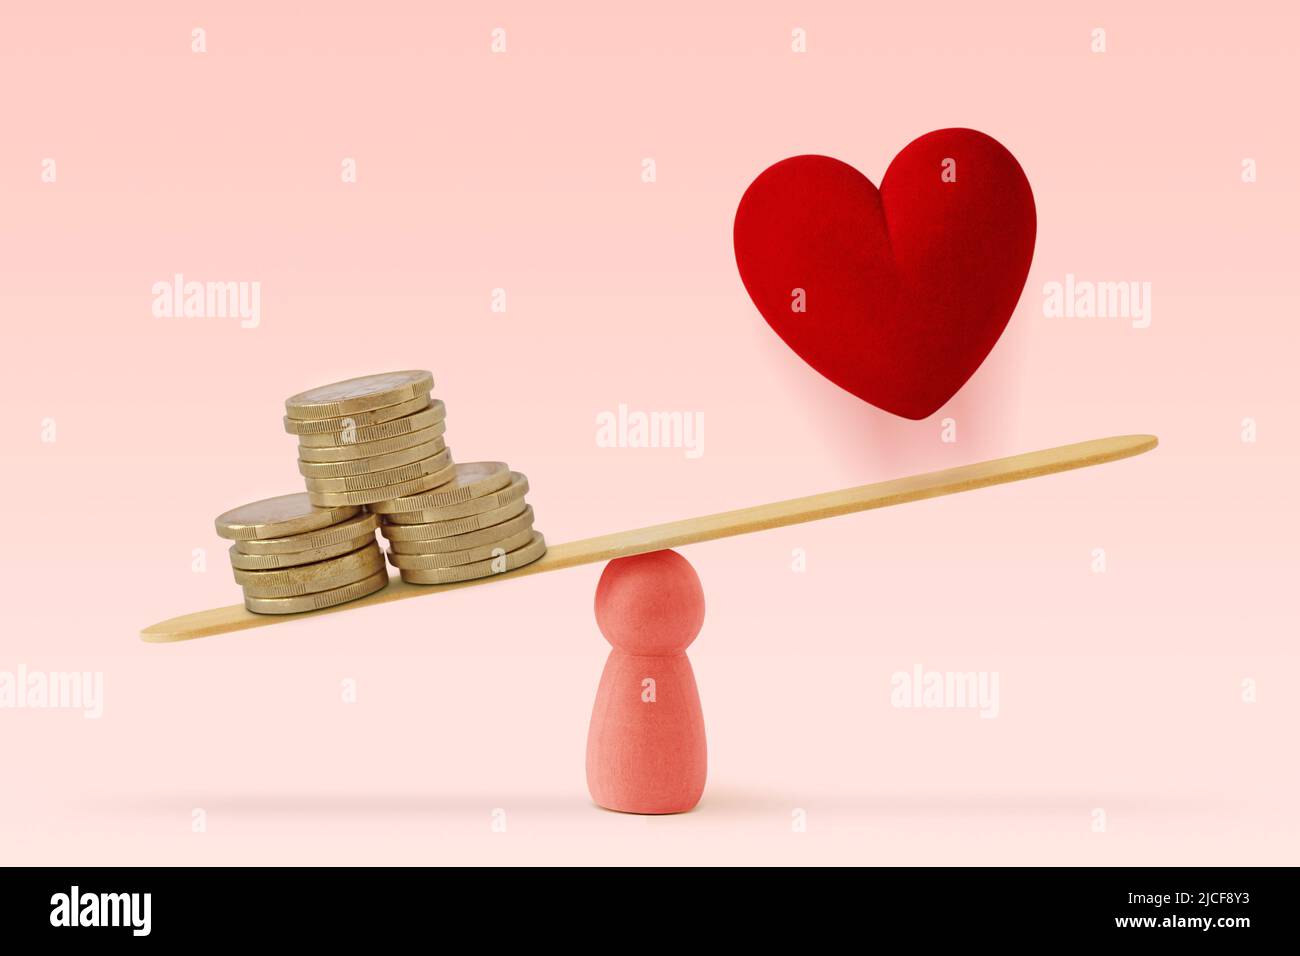 Geld und Herz auf einem rosa Hintergrund – das Konzept von Frau und Geld hat Vorrang vor der Liebe im Leben Stockfoto